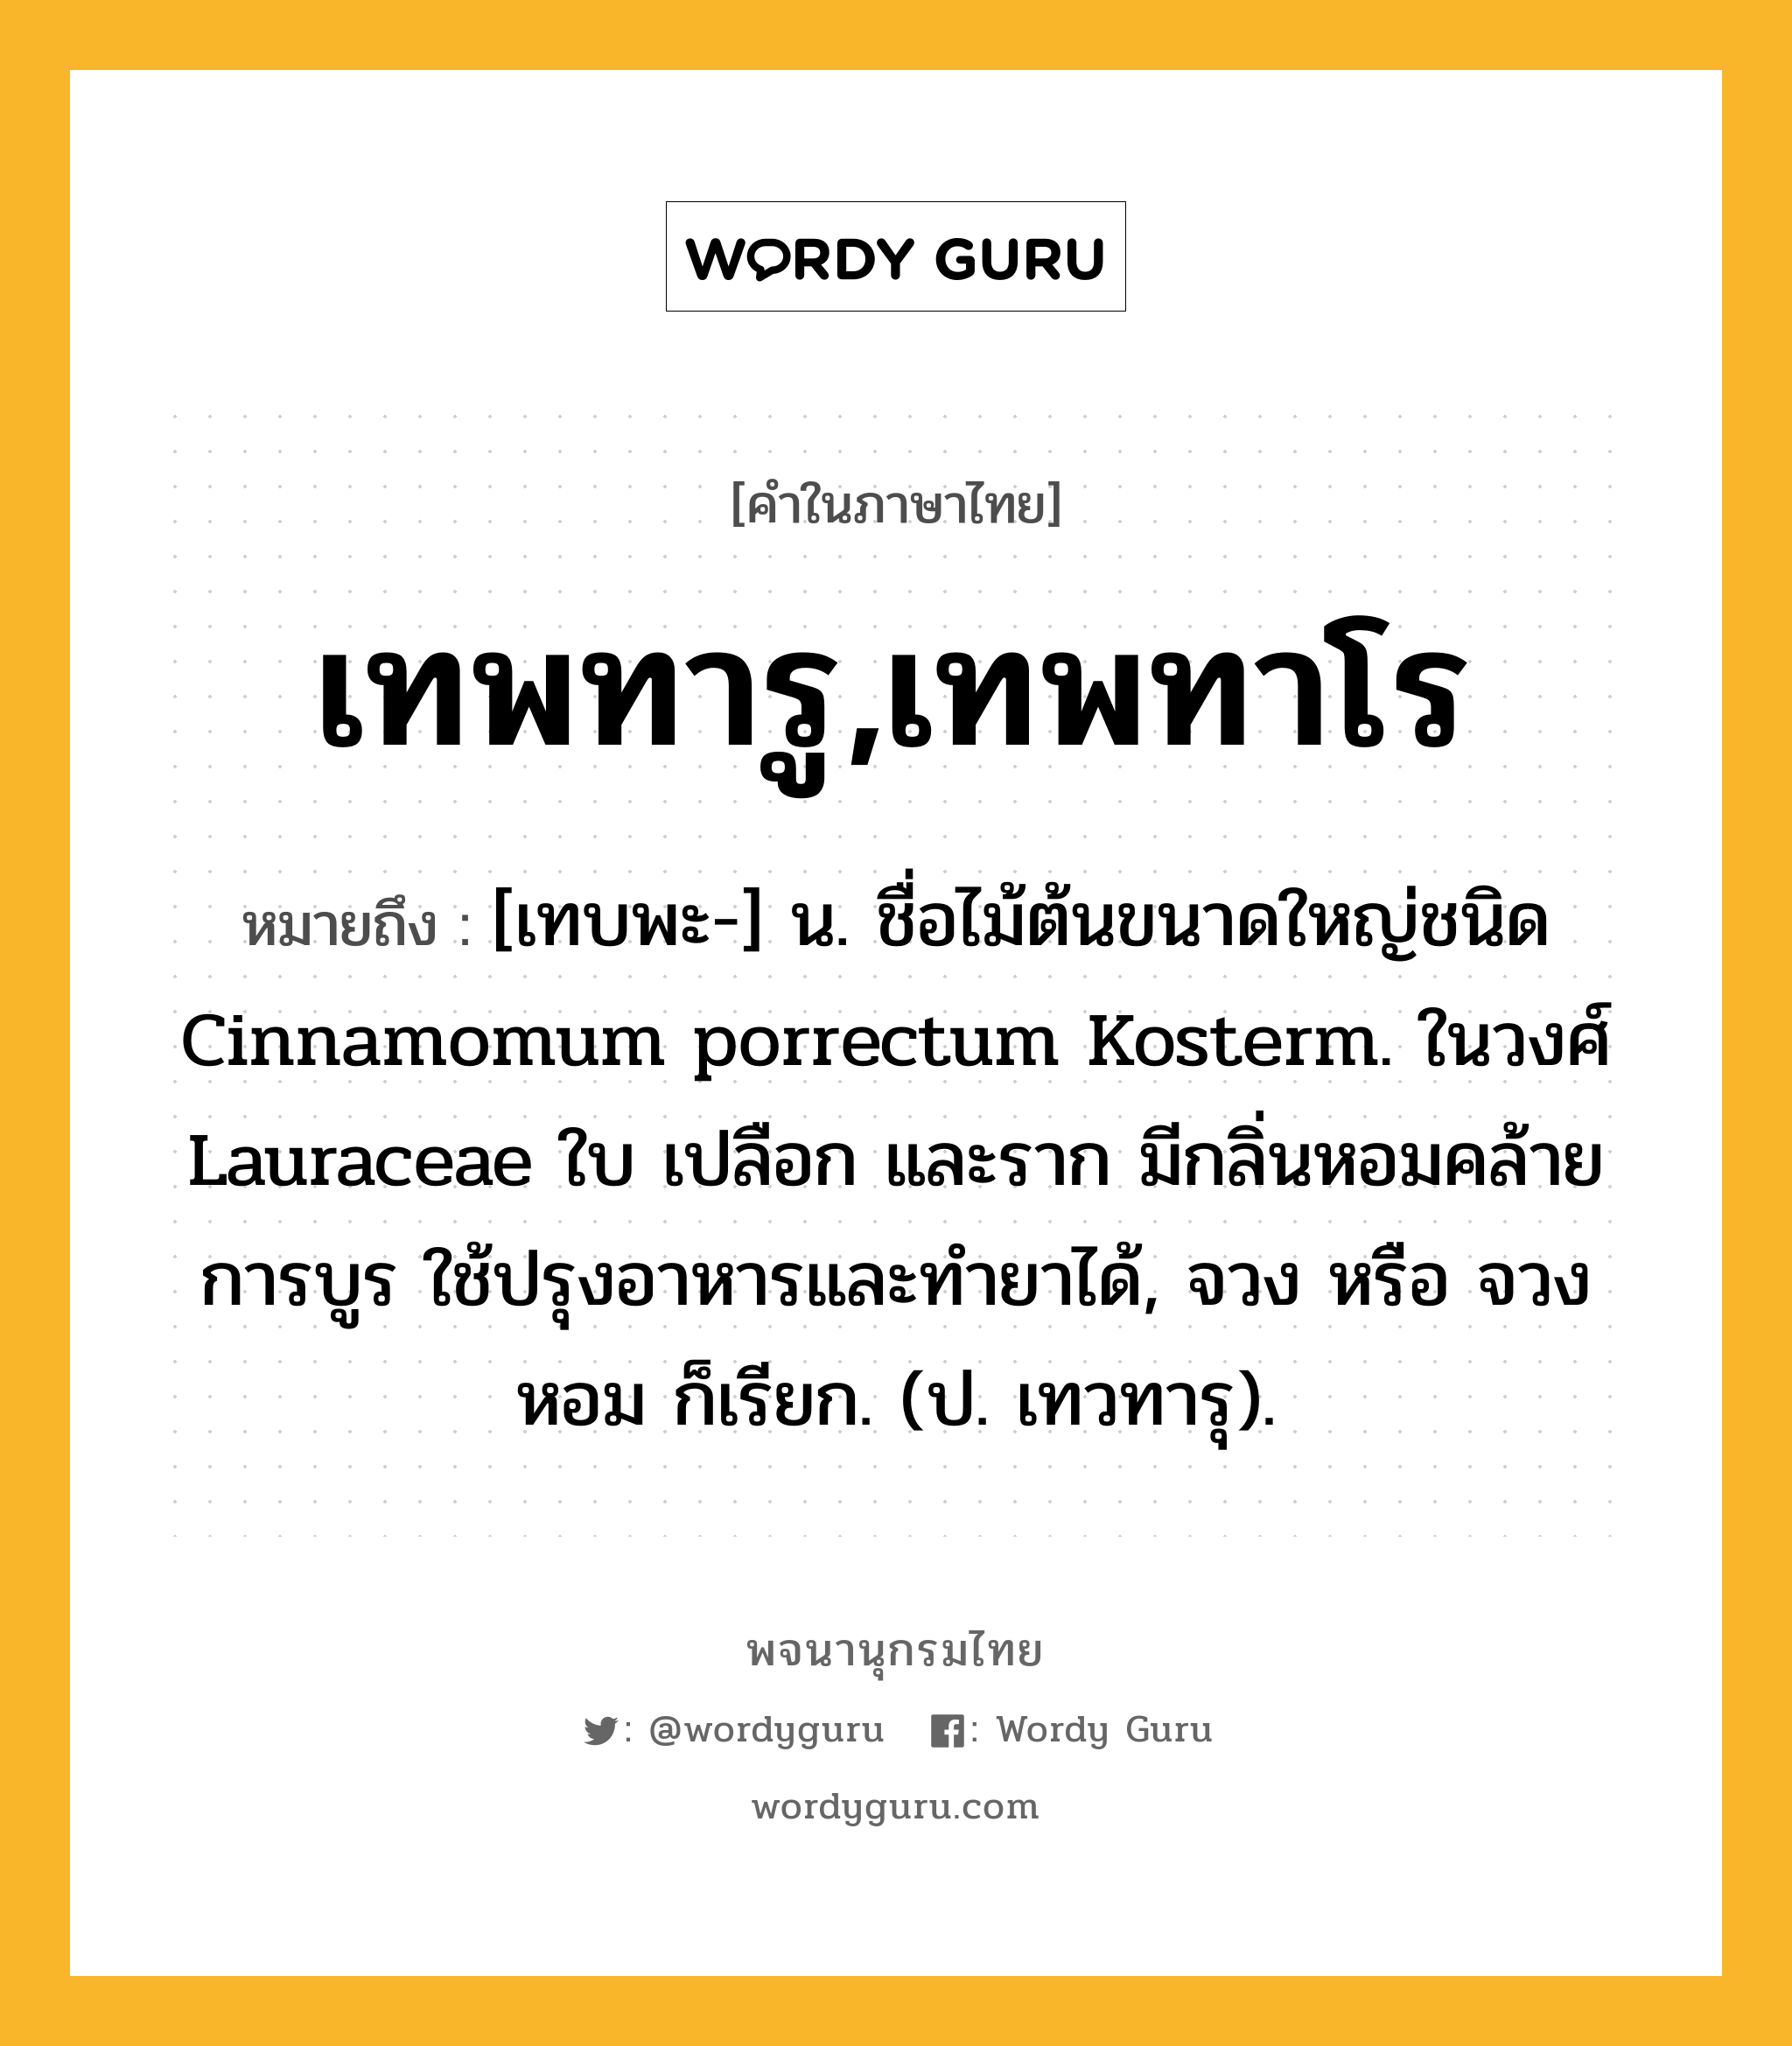 เทพทารู,เทพทาโร ความหมาย หมายถึงอะไร?, คำในภาษาไทย เทพทารู,เทพทาโร หมายถึง [เทบพะ-] น. ชื่อไม้ต้นขนาดใหญ่ชนิด Cinnamomum porrectum Kosterm. ในวงศ์ Lauraceae ใบ เปลือก และราก มีกลิ่นหอมคล้ายการบูร ใช้ปรุงอาหารและทํายาได้, จวง หรือ จวงหอม ก็เรียก. (ป. เทวทารุ).